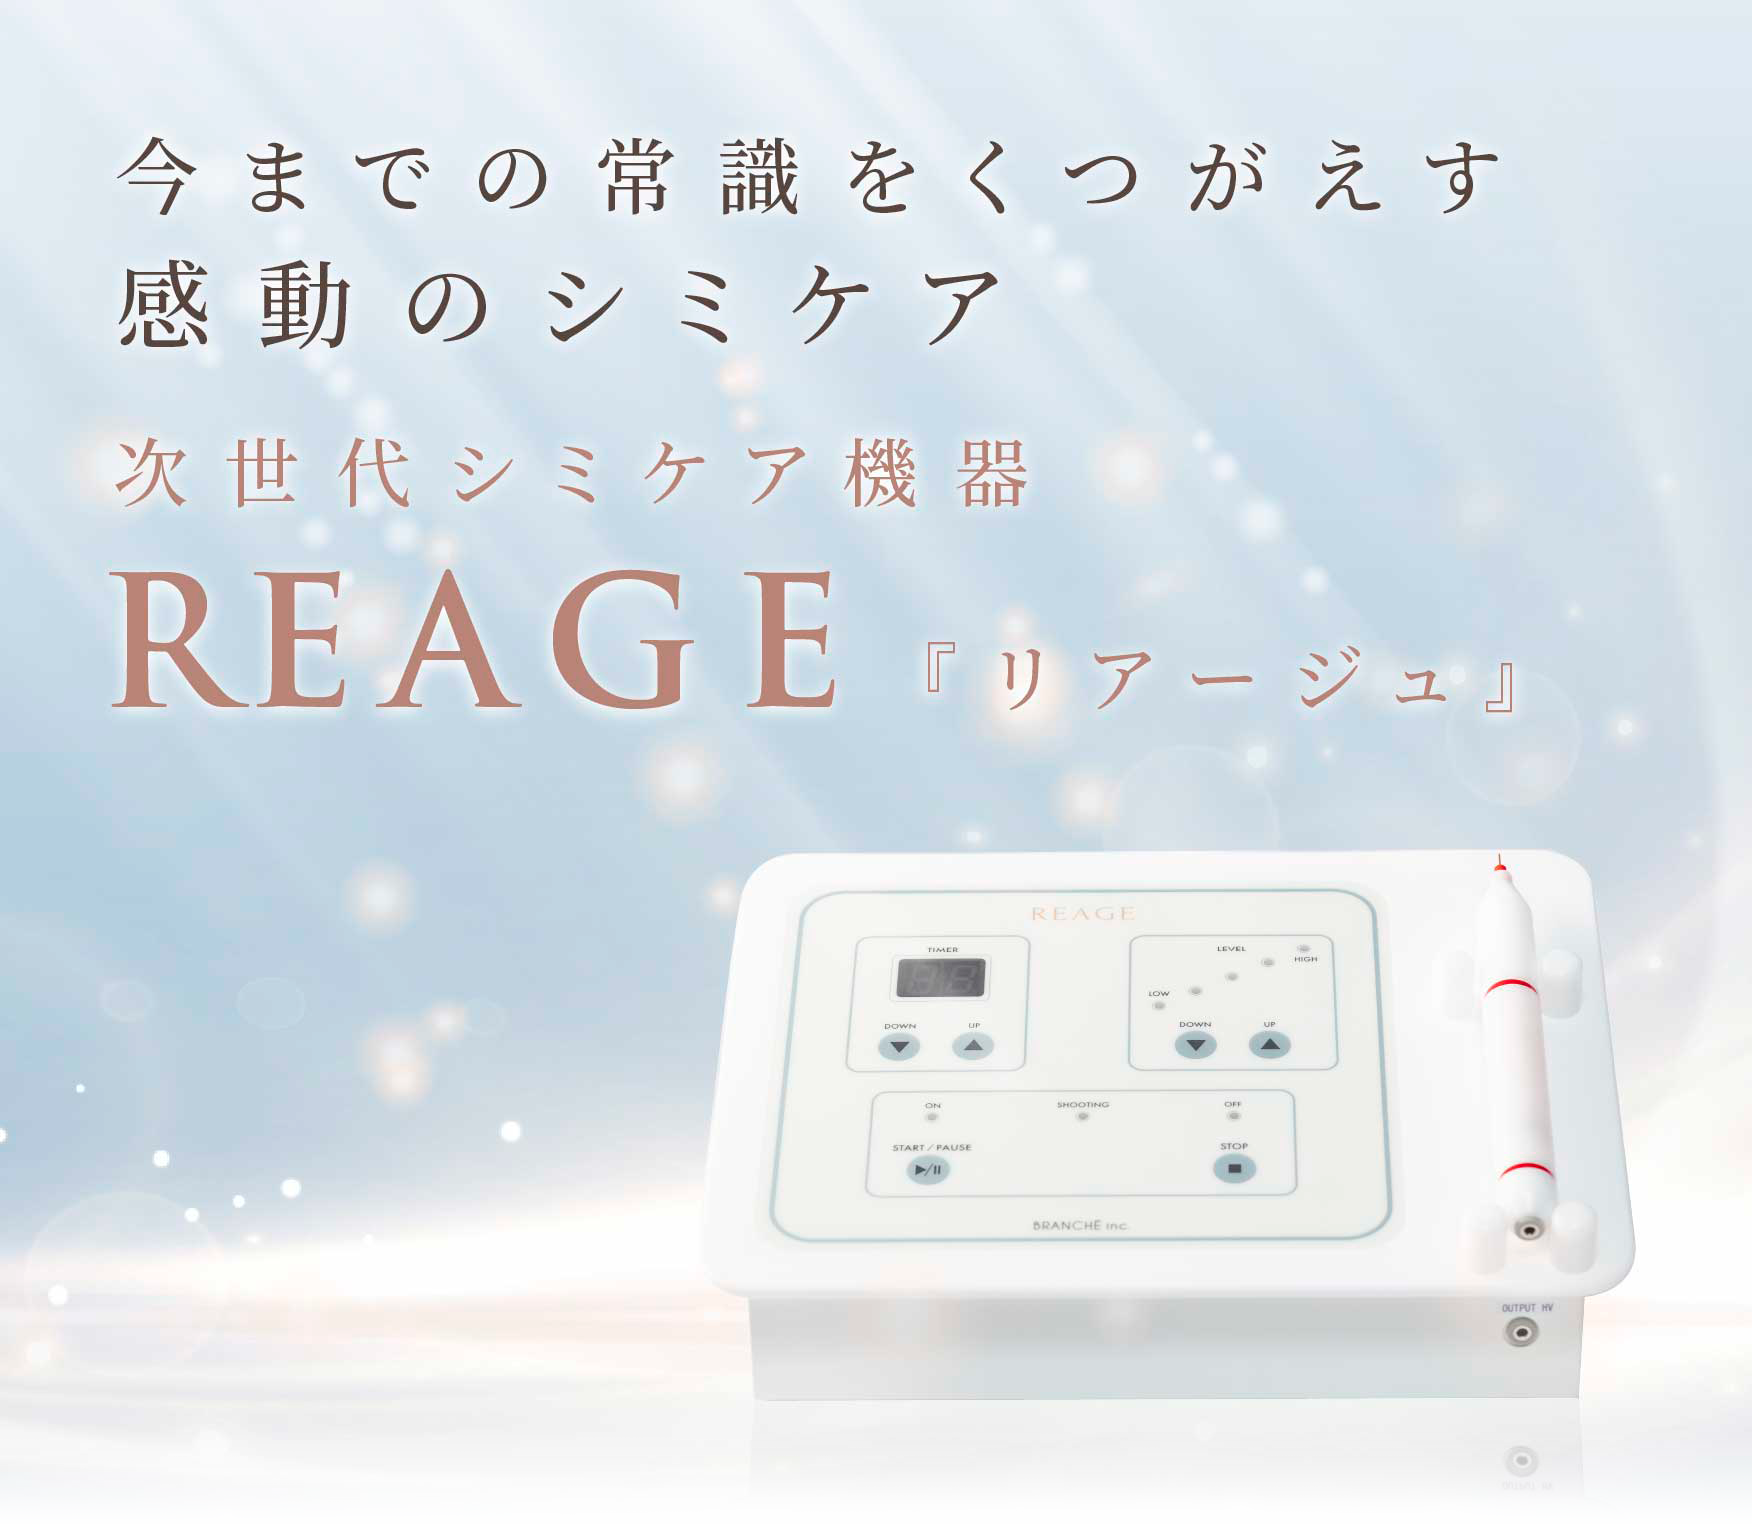 シミケア機器REAGE【リアージュ】